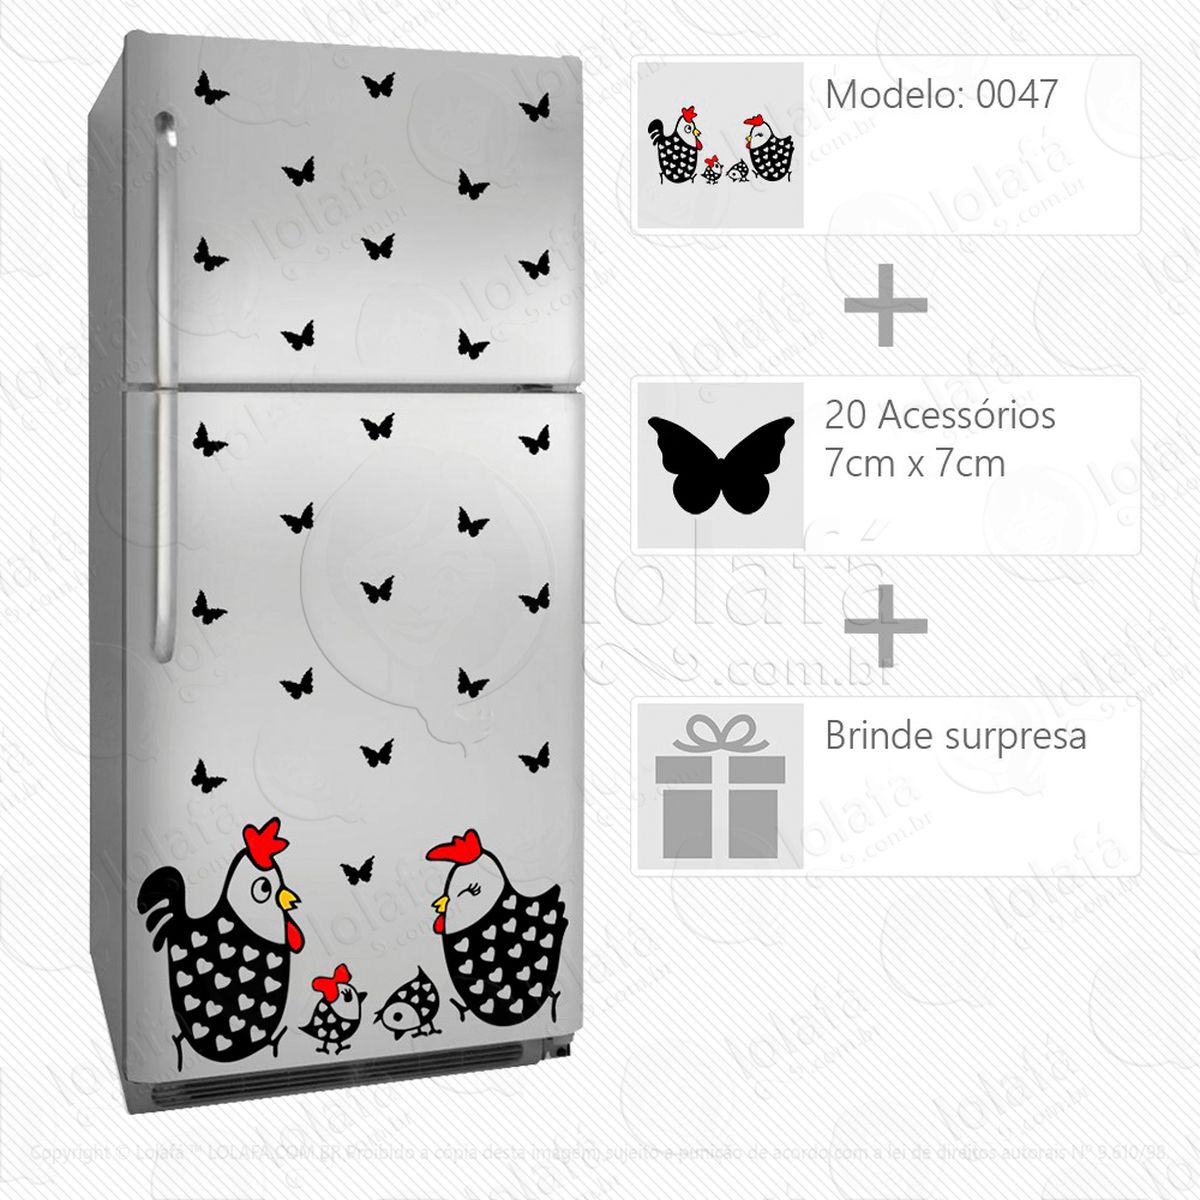 galinhas adesivo para geladeira e frigobar - mod:47